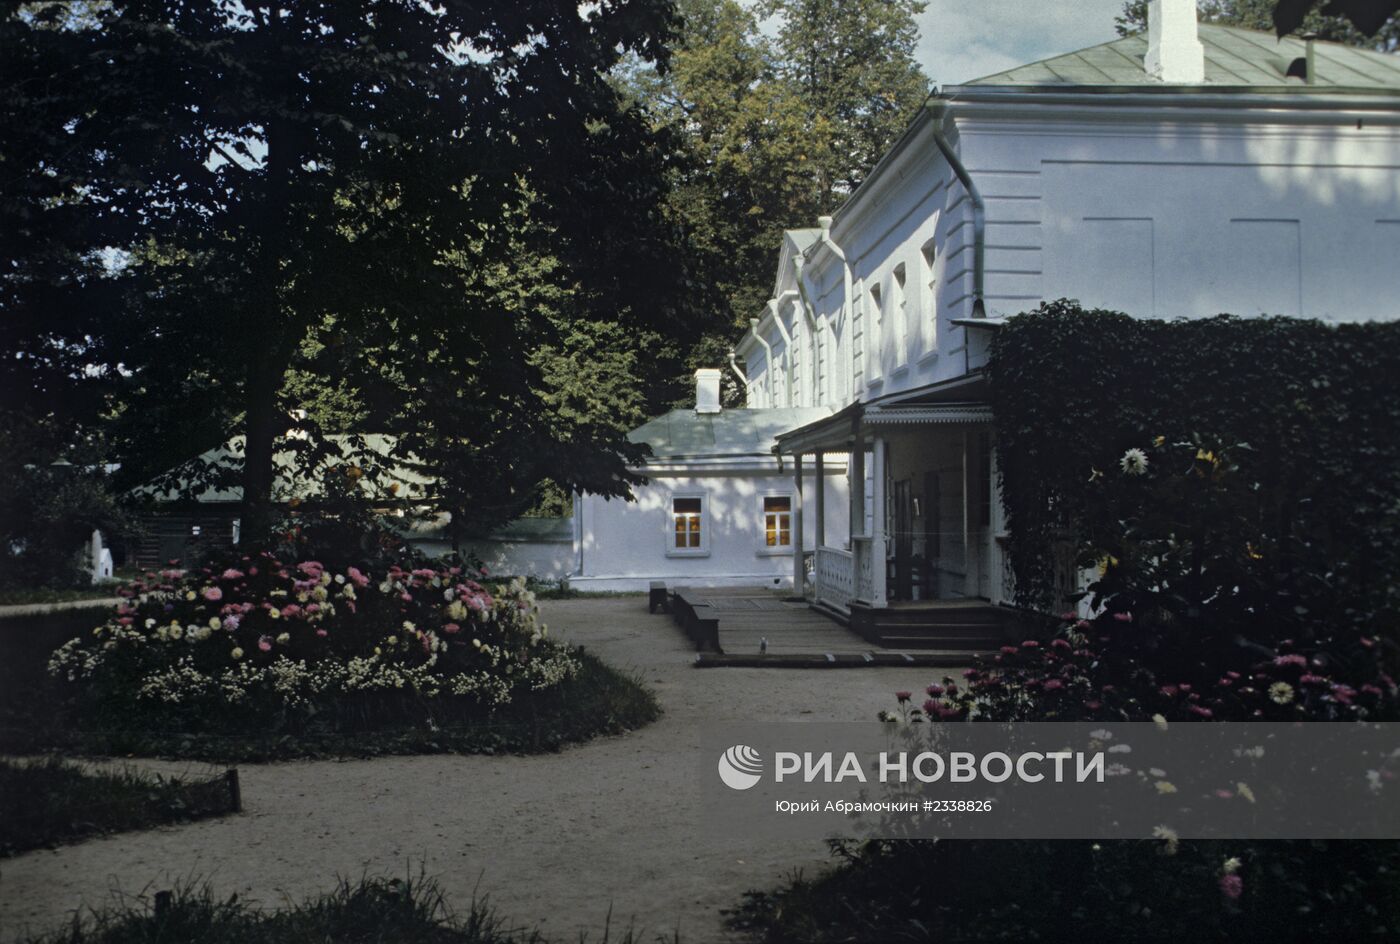 Музей-усадьба Л.Н. Толстого "Ясная поляна"